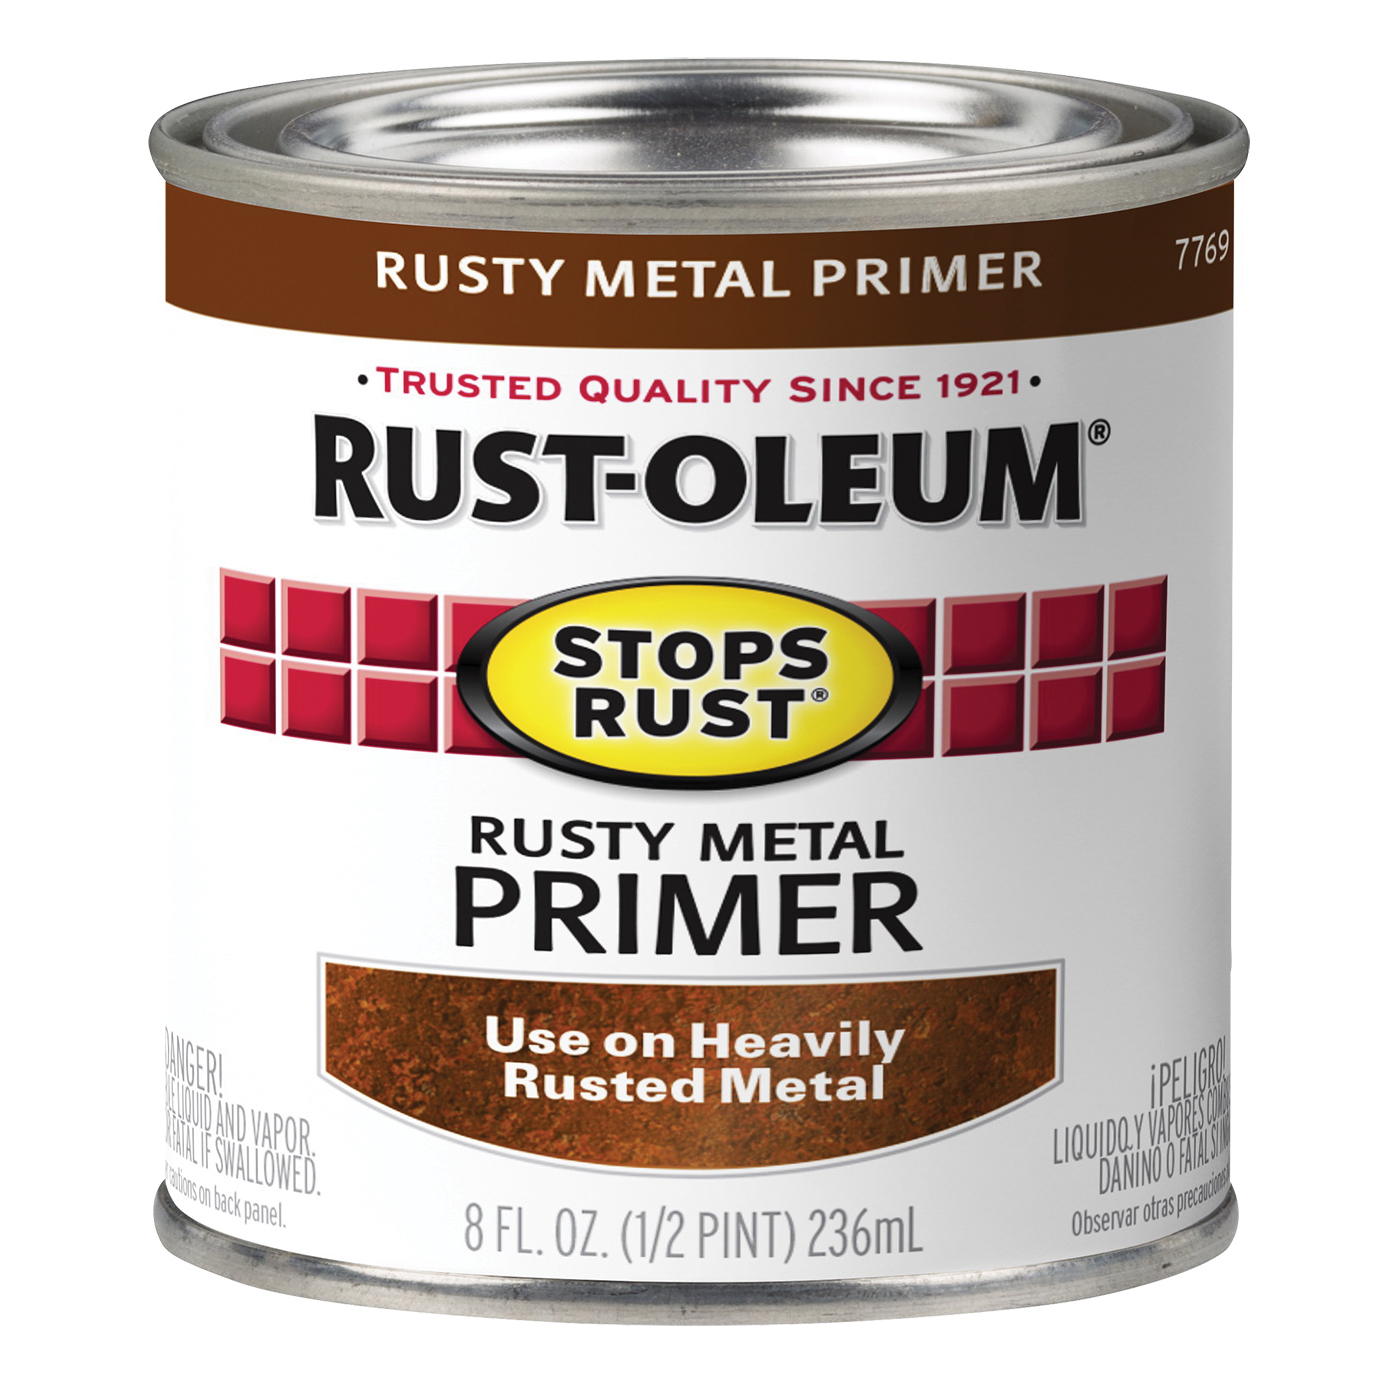 Buy Rust-Oleum 7769730 Primer, Flat, Rusty Metal Primer, 0.5 pt Rusty Metal  Primer